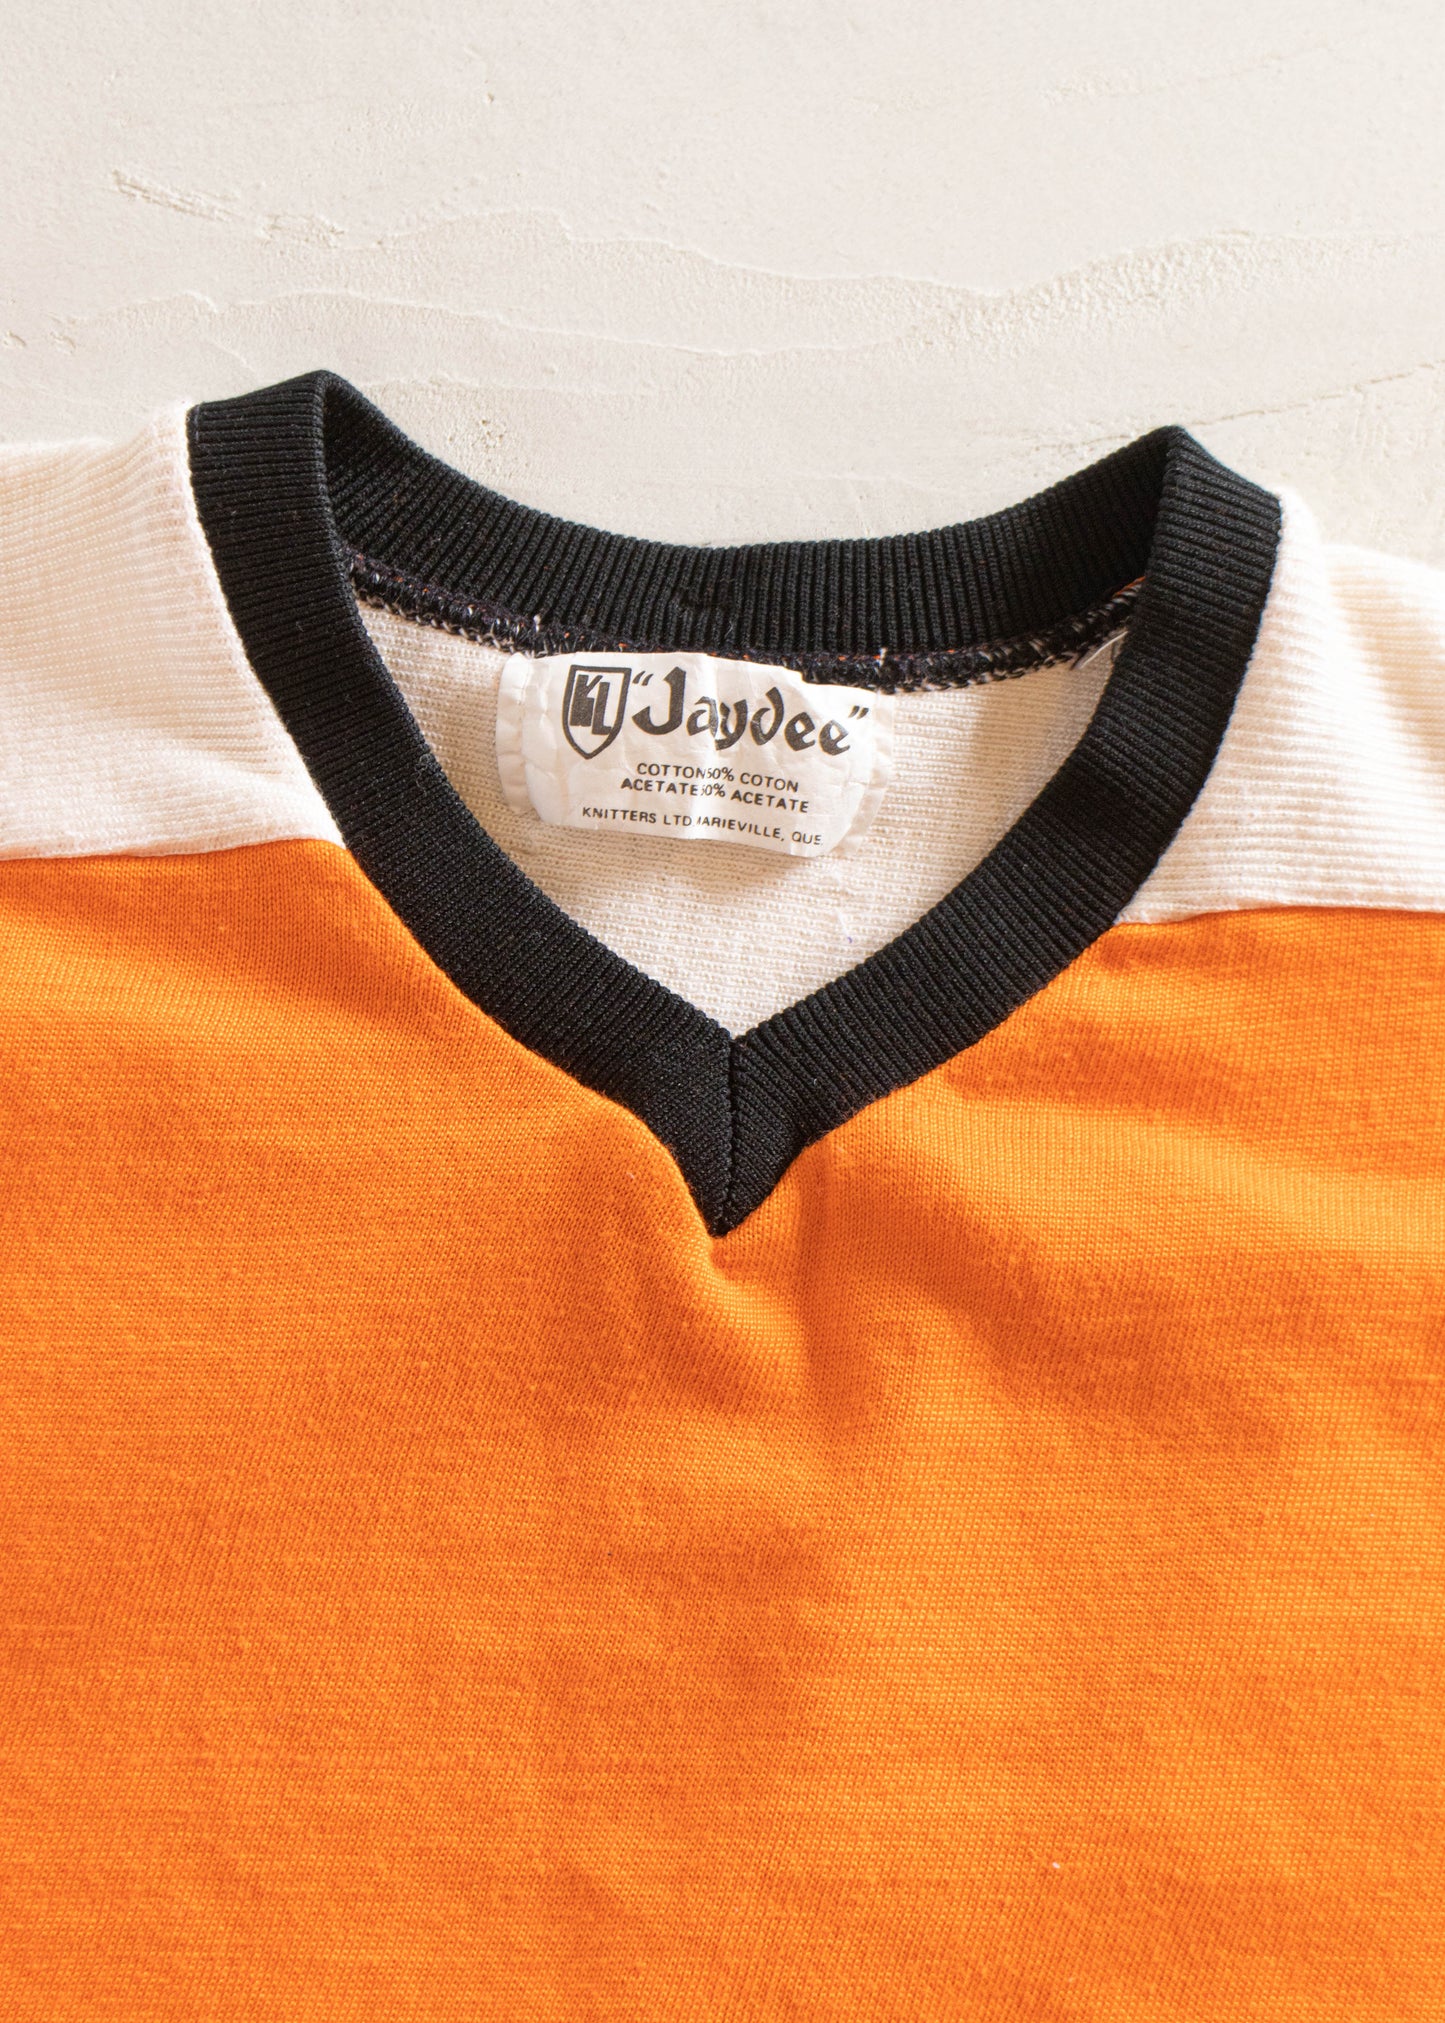 1980s Jaydee Knitters Ltd Long Sleeve Sport Jersey Size L/XL